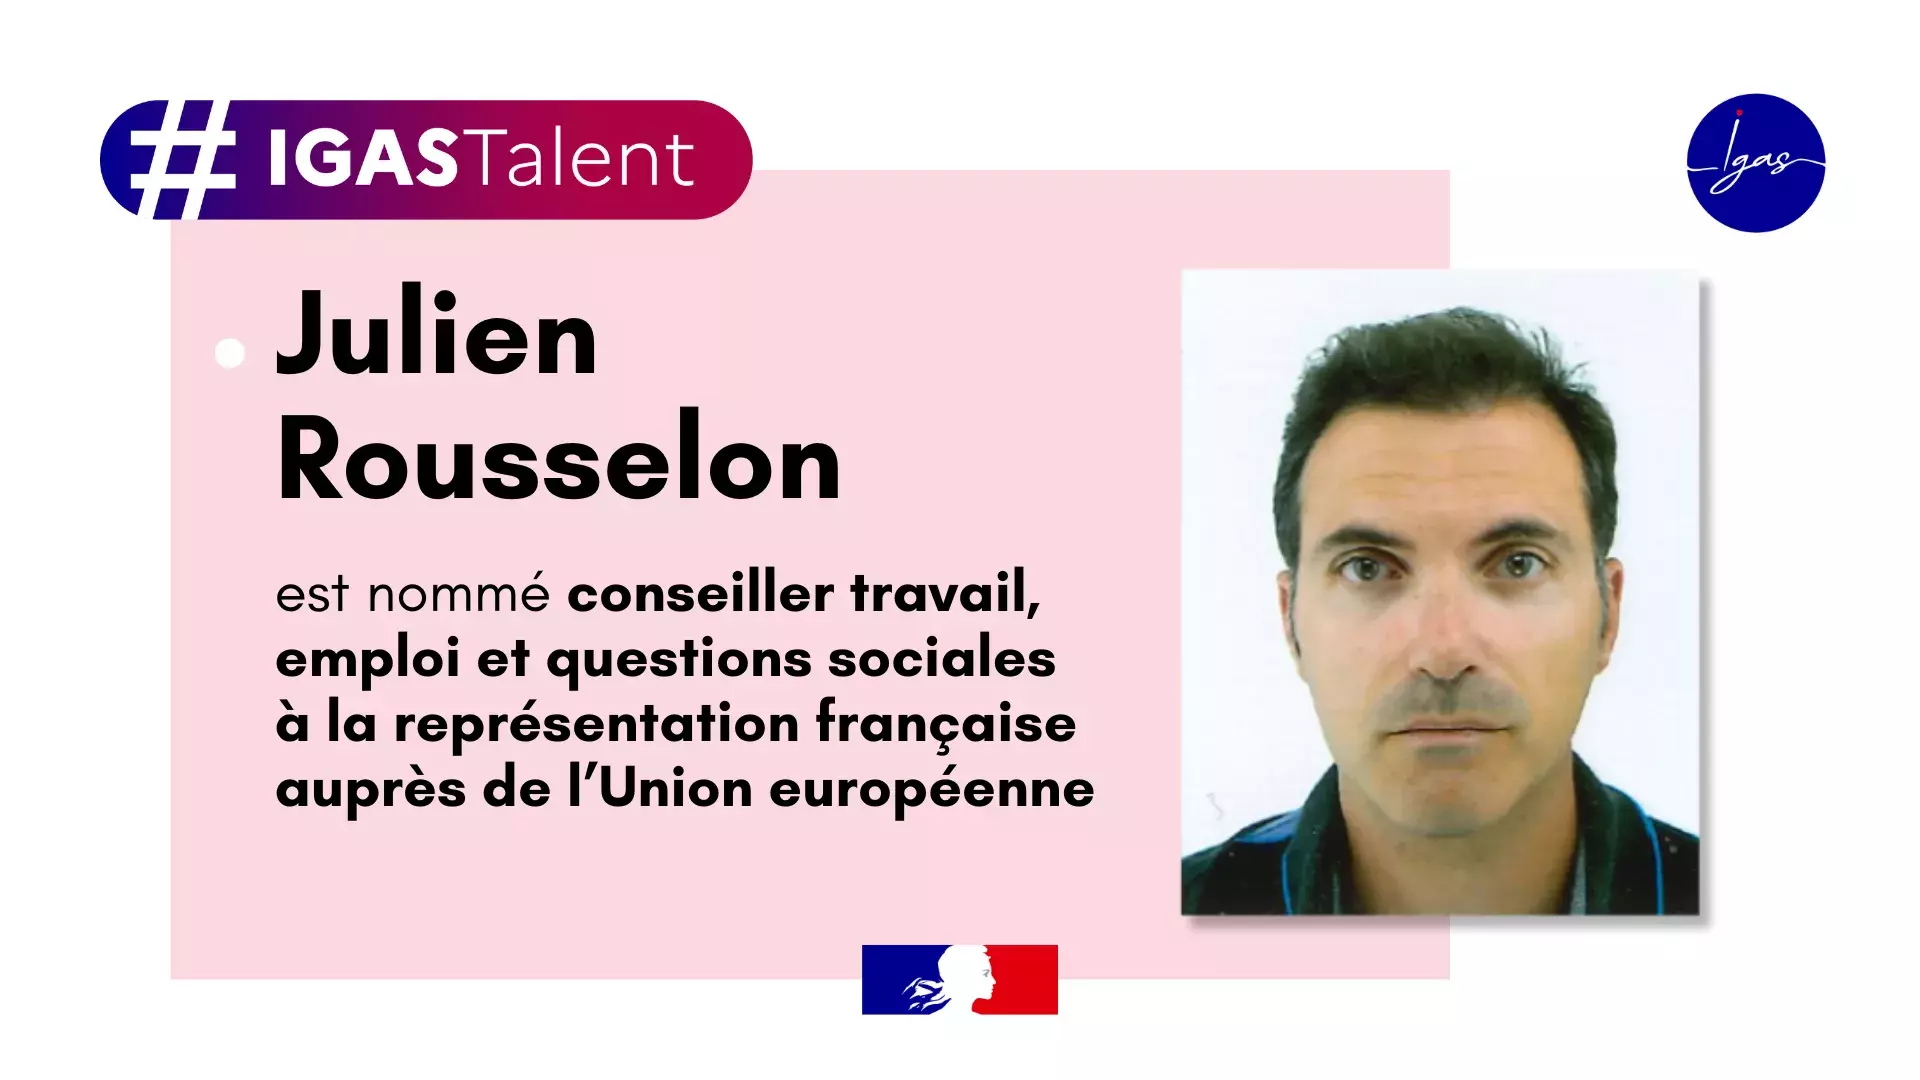 Photo de Julien rousselon avec le texte "Julien Rousselon est nommé conseiller travail, emploi et questions sociales à la représentation française auprès de l’Union européenne"